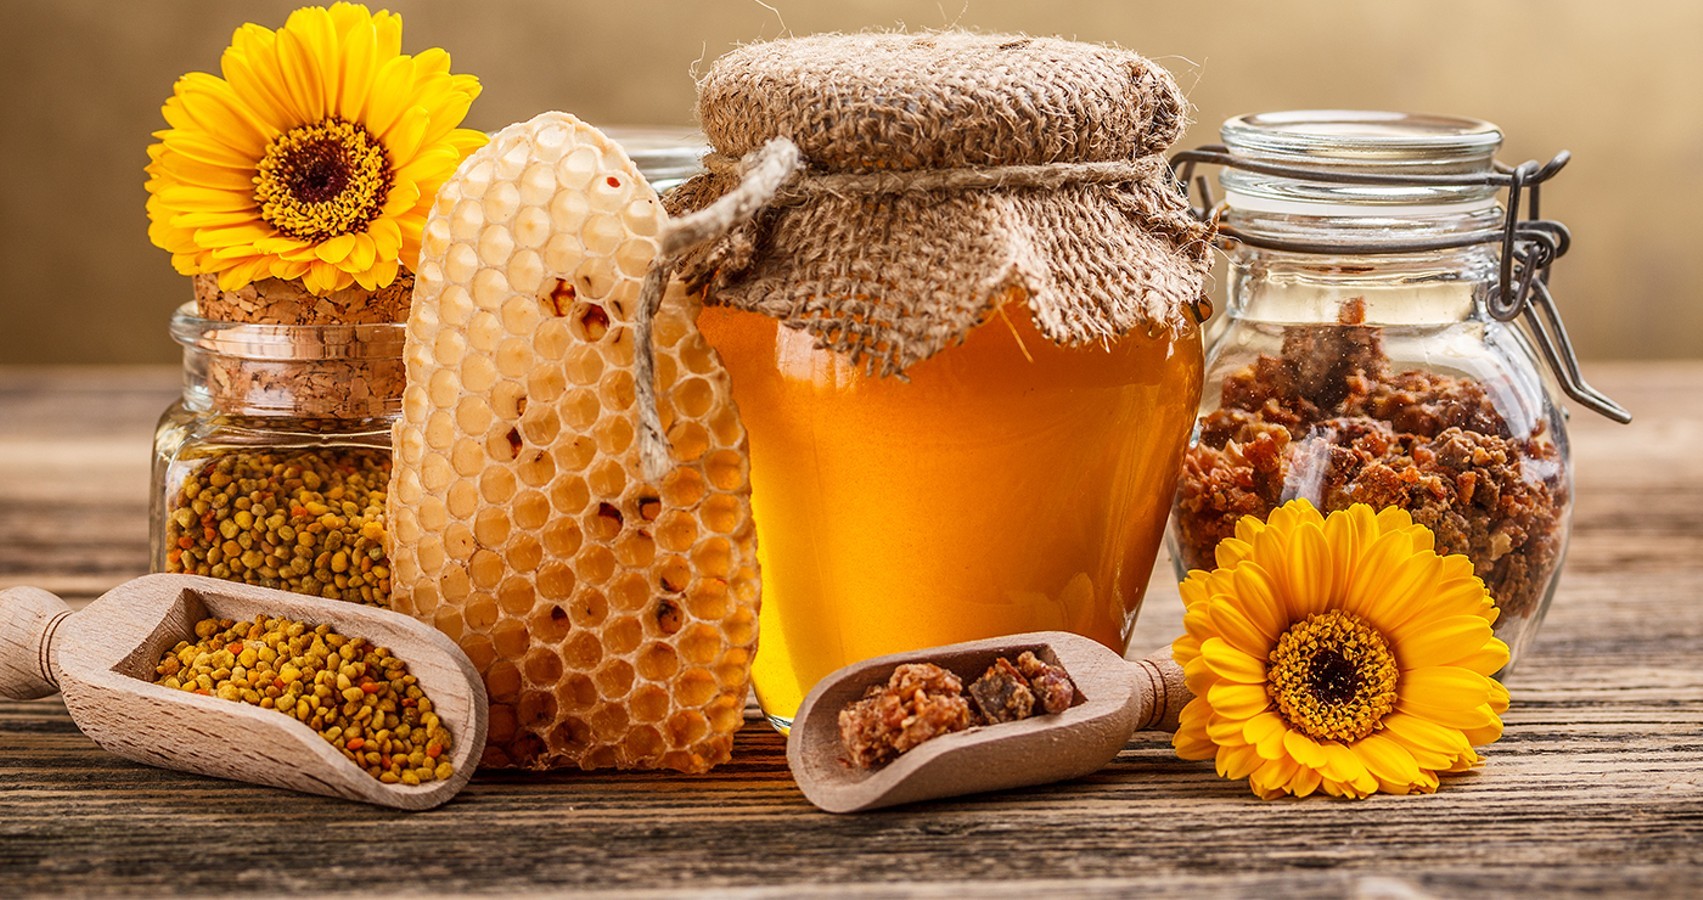 500 тонн мёда намерены собрать пчеловоды в СКО